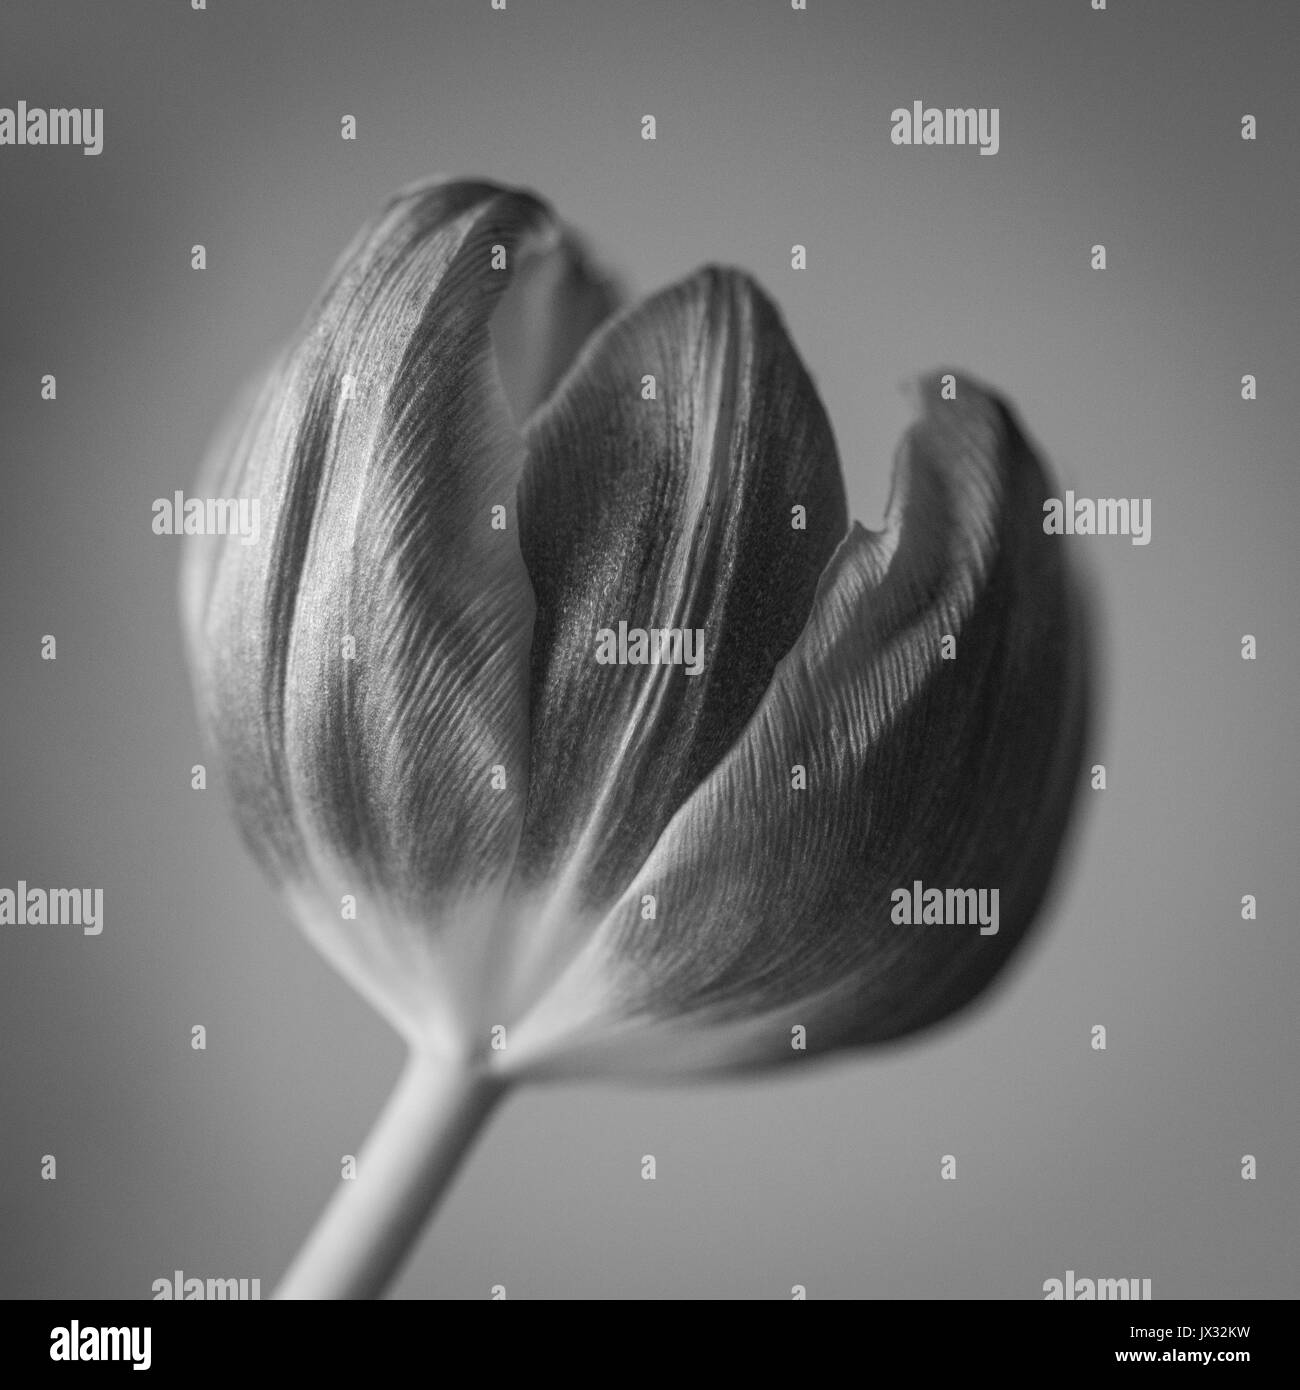 Immagine in bianco e nero di un tulipano in stretta fino che mostra il dettaglio delle texture floreali. Foto Stock